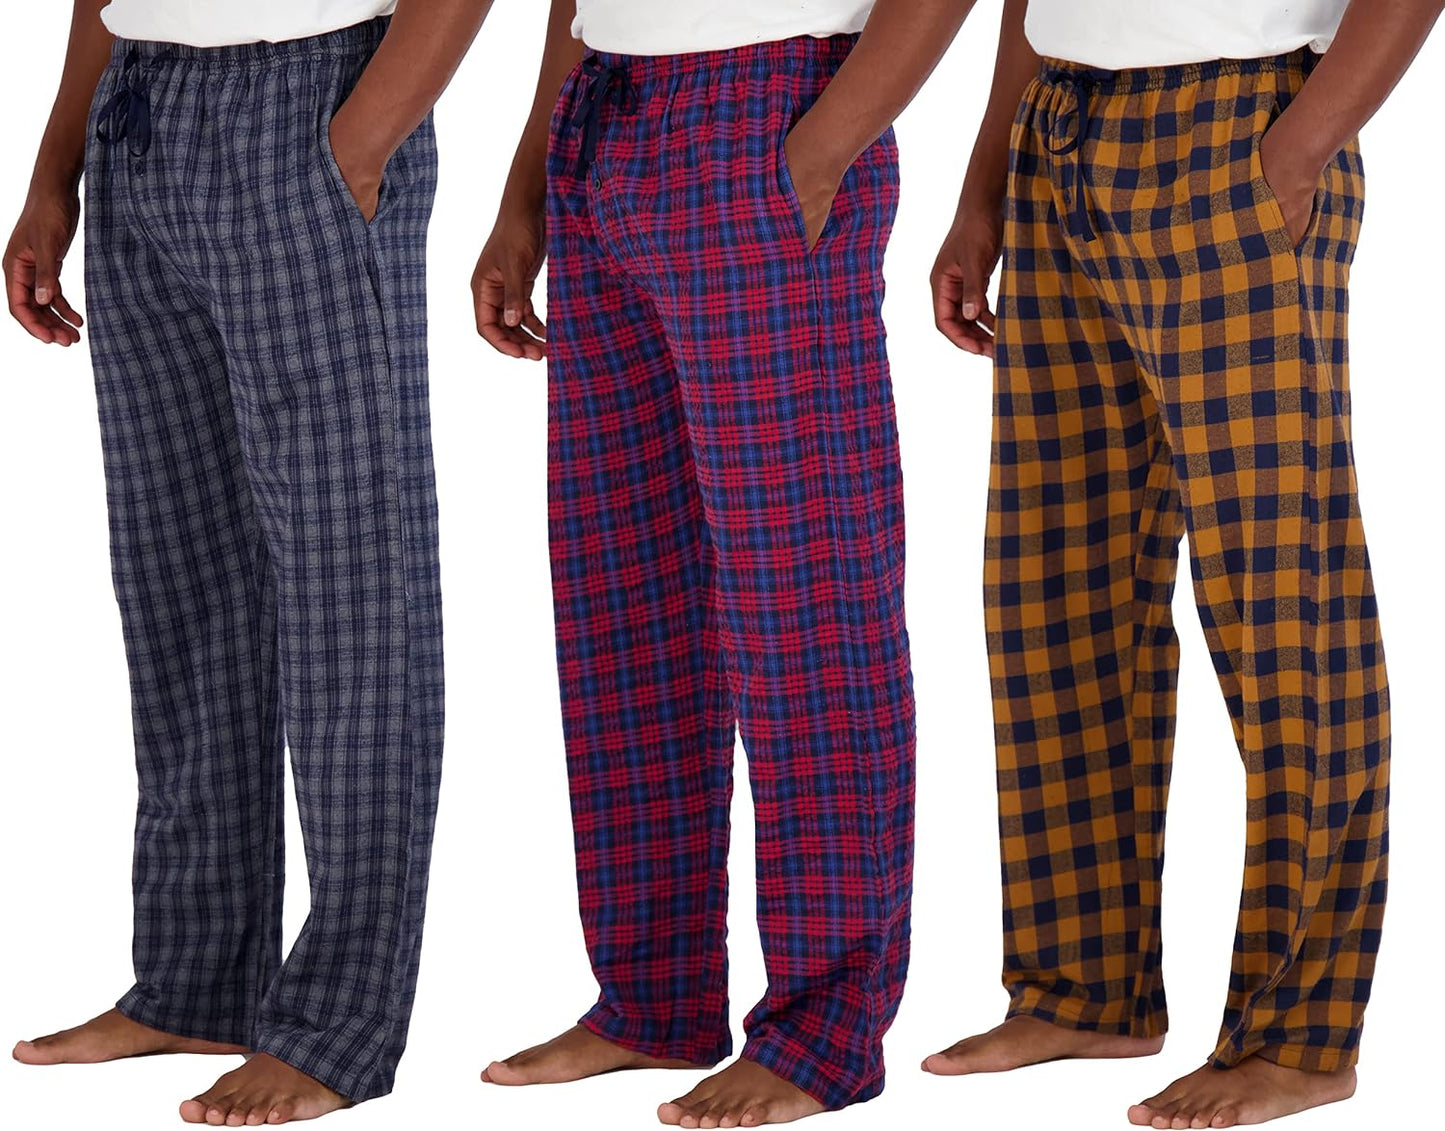 Wholesale Men's Pajama Pants, Knit Cotton Flannel Plaid Lounge Bottoms - All Styles